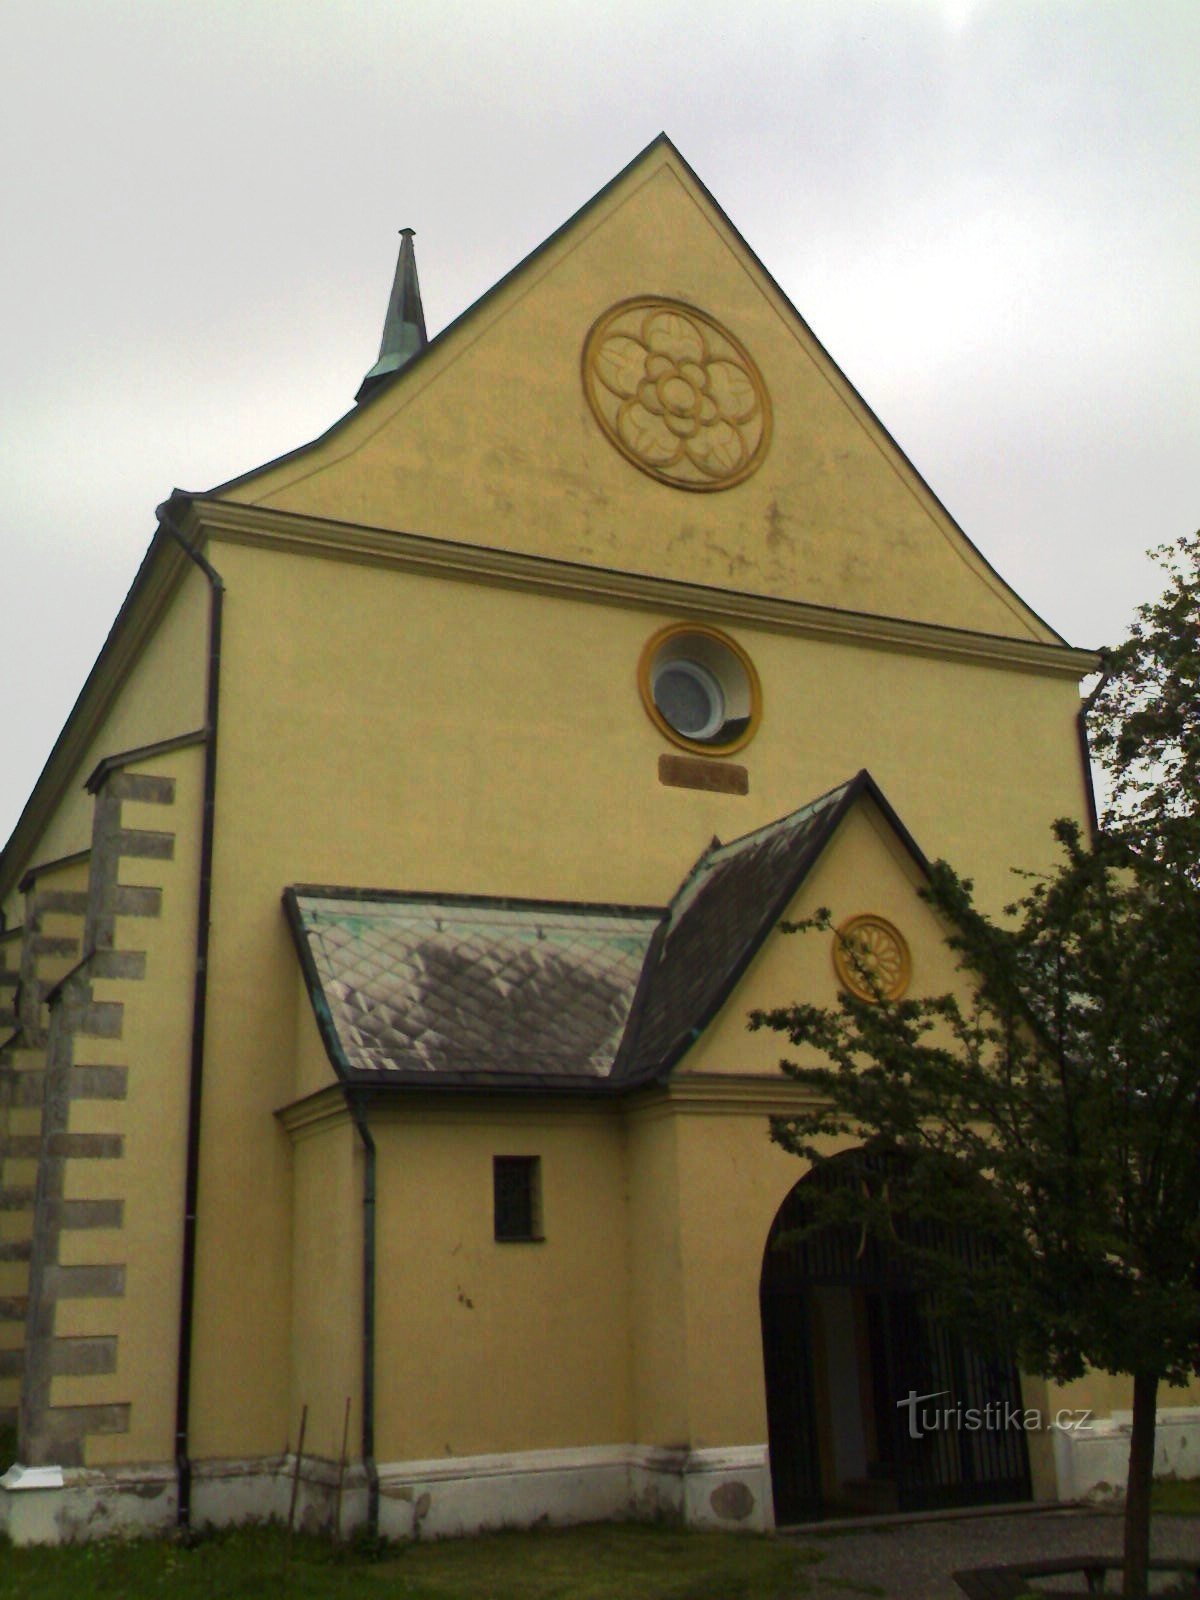 Rovensko pod Troskami - Szent István-templom. Vencel